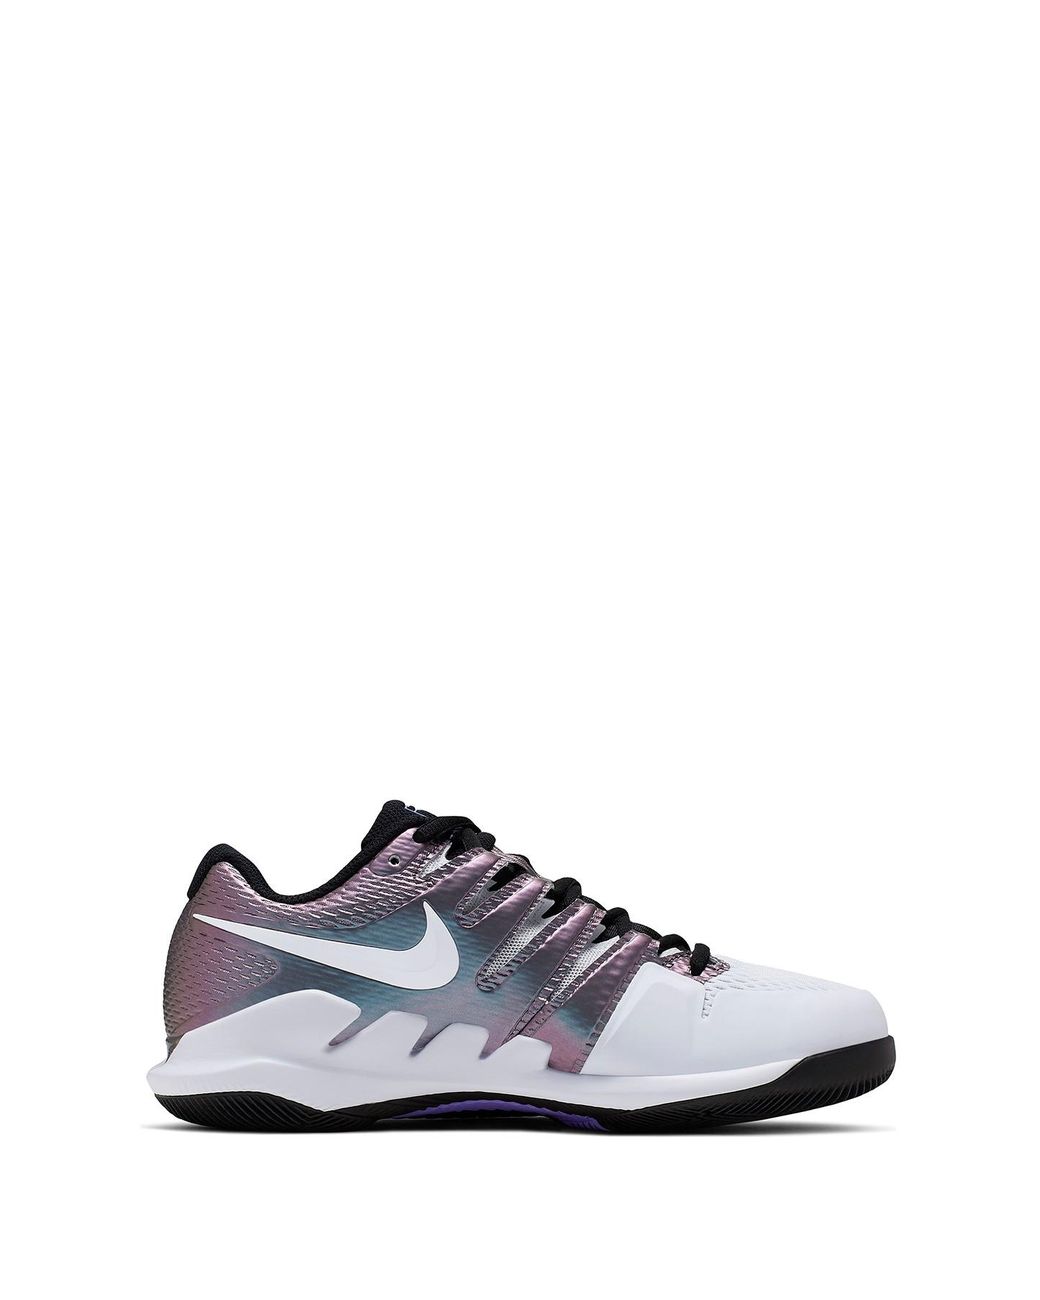 Nike Air Zoom Vapor X Tennis Shoes | Lyst